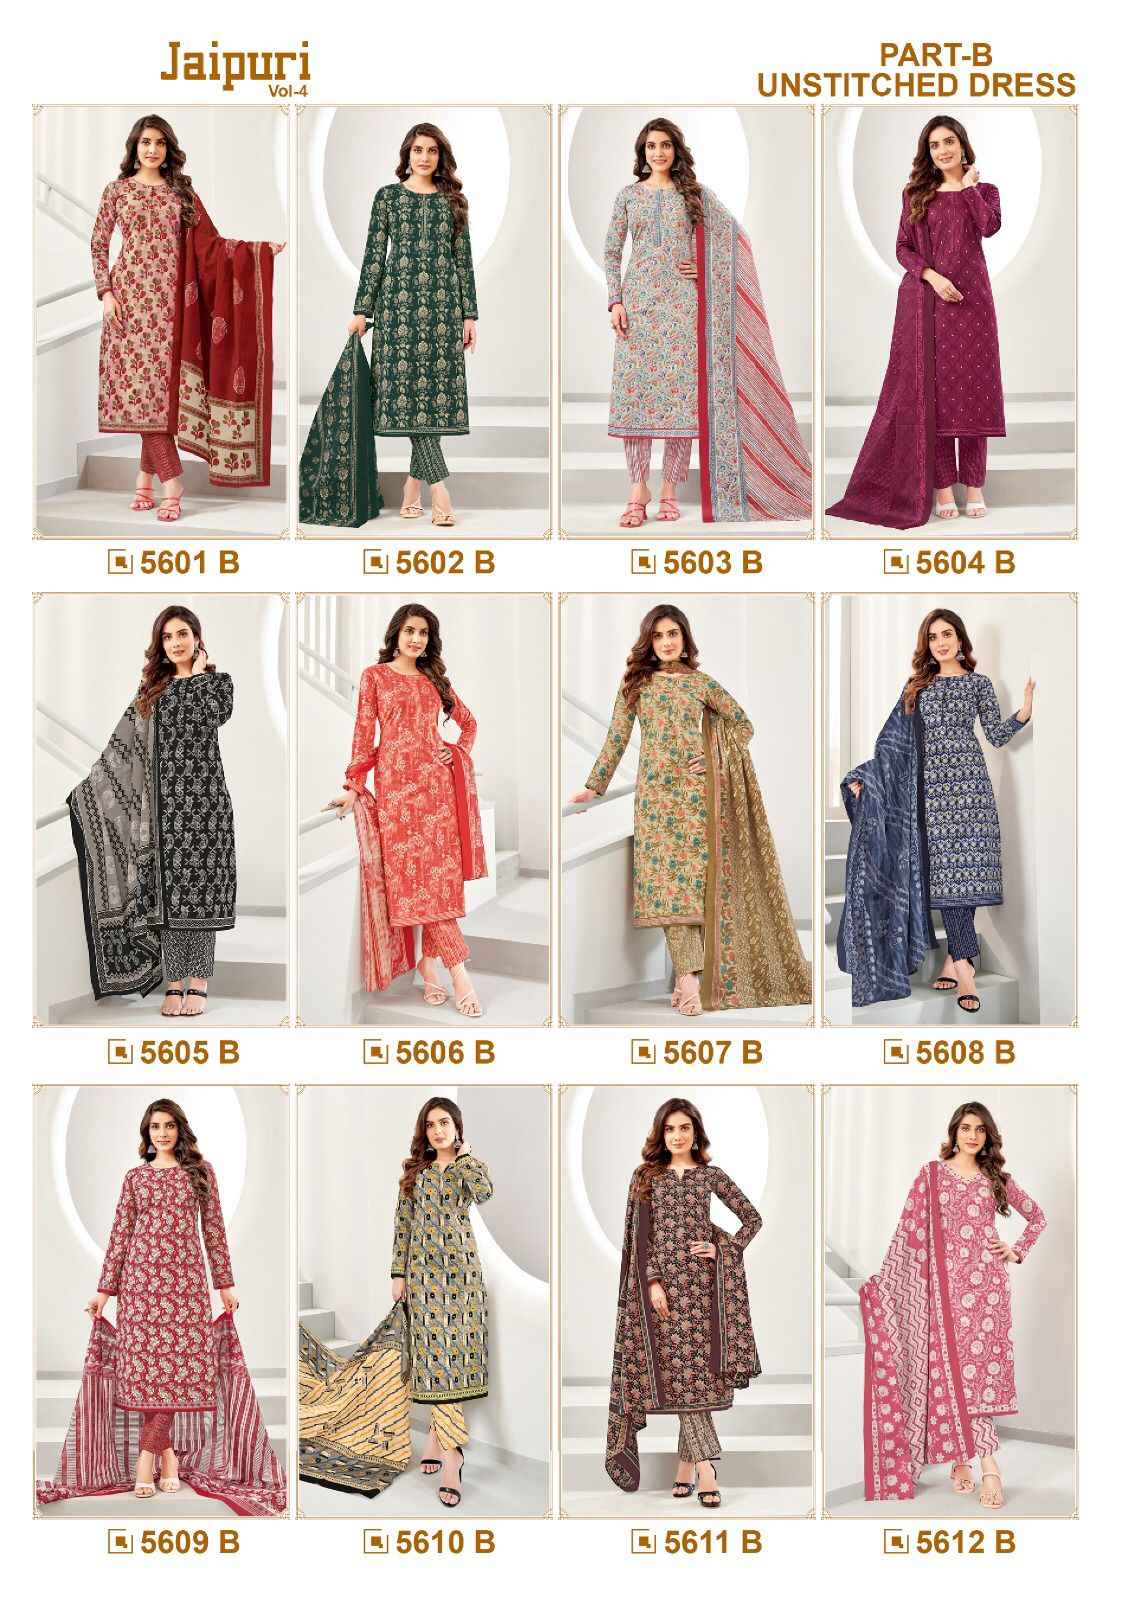  Kala Jaipuri Vol-4 Cotton Readymade Suit (12 Pc Catalog)